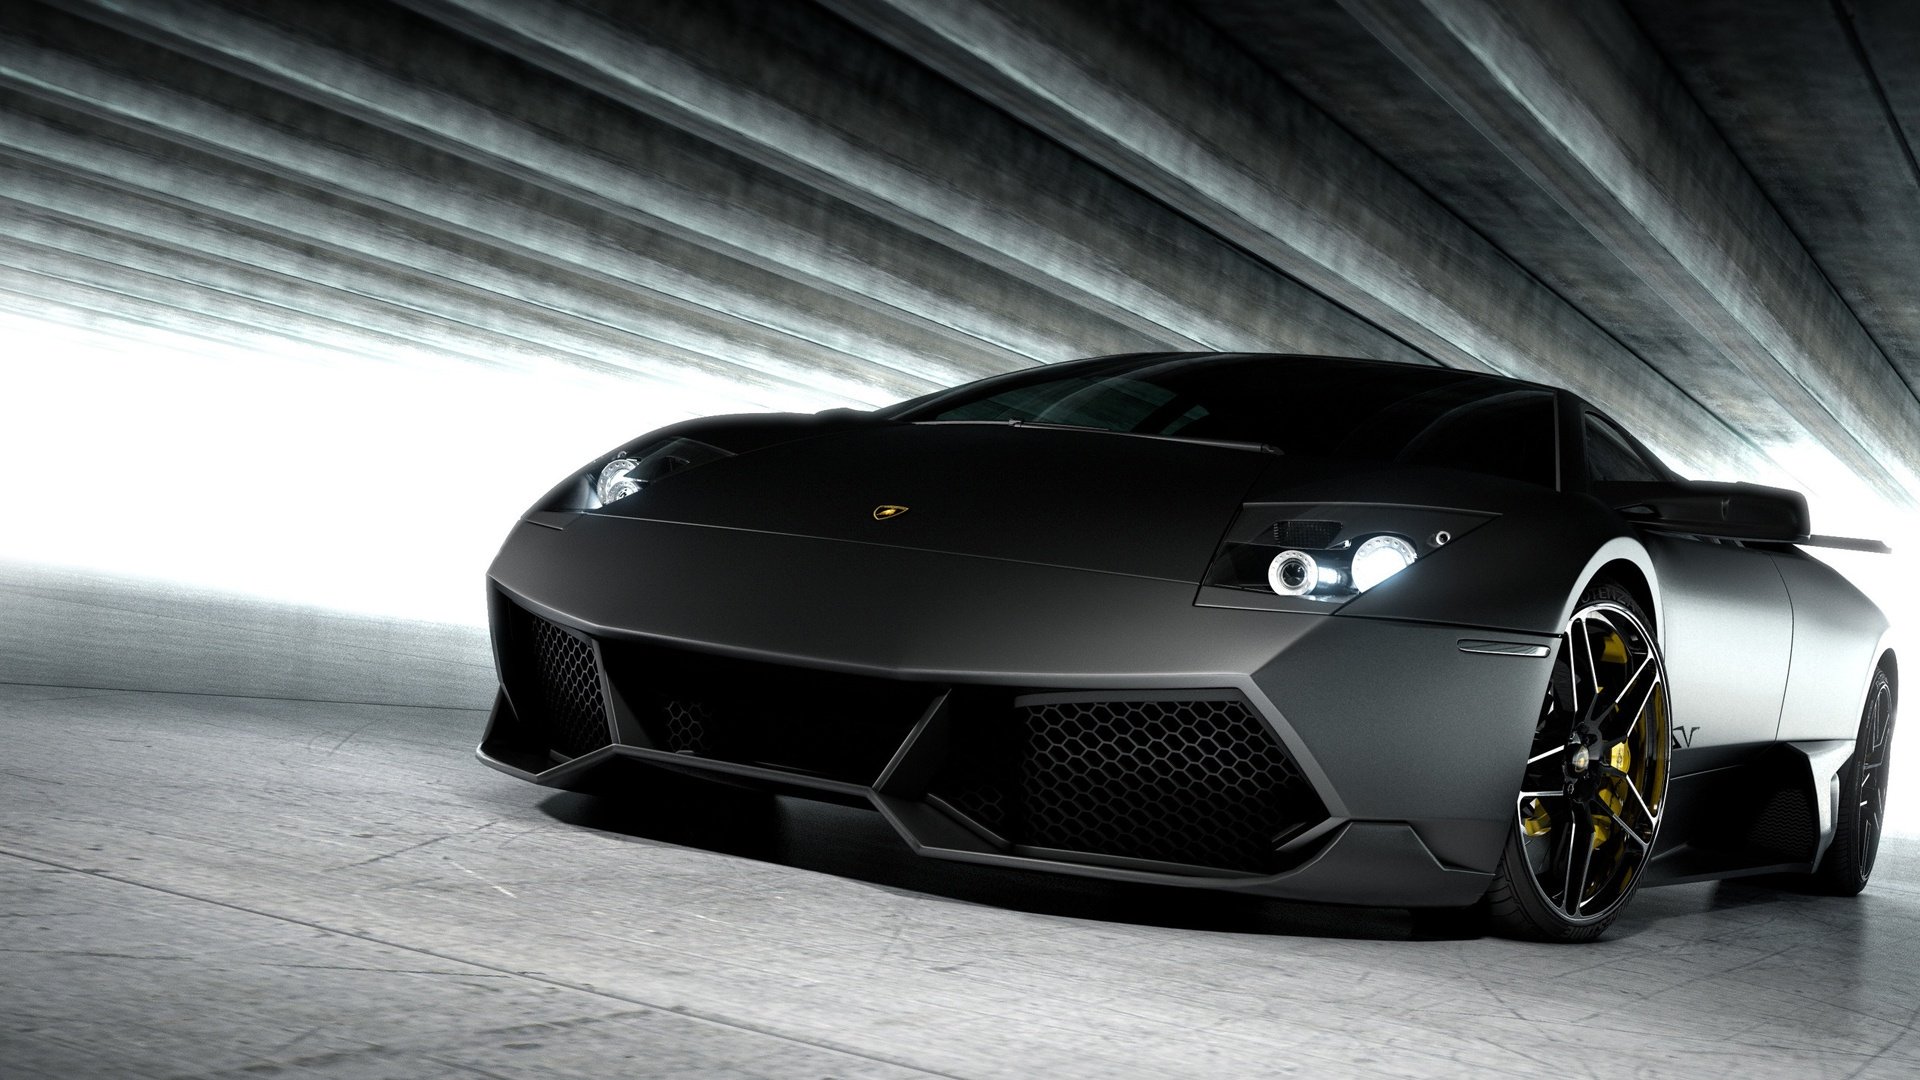 Lamborghini Wallpaper In HD For Desktop And Mobile Here